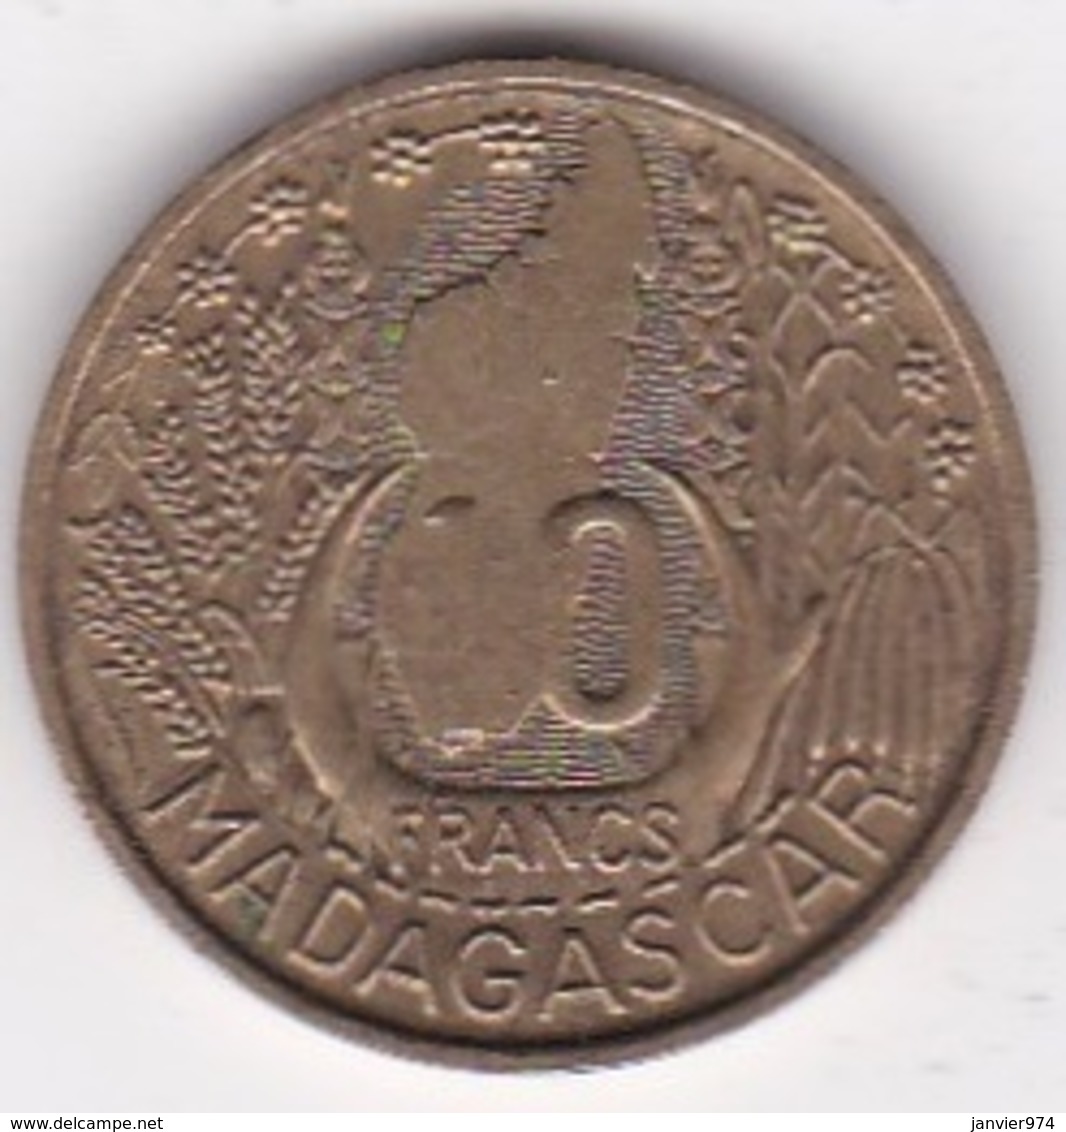 MADAGASCAR /REPUBLIQUE FRANCAISE. 10 FRANCS 1953 - Madagascar